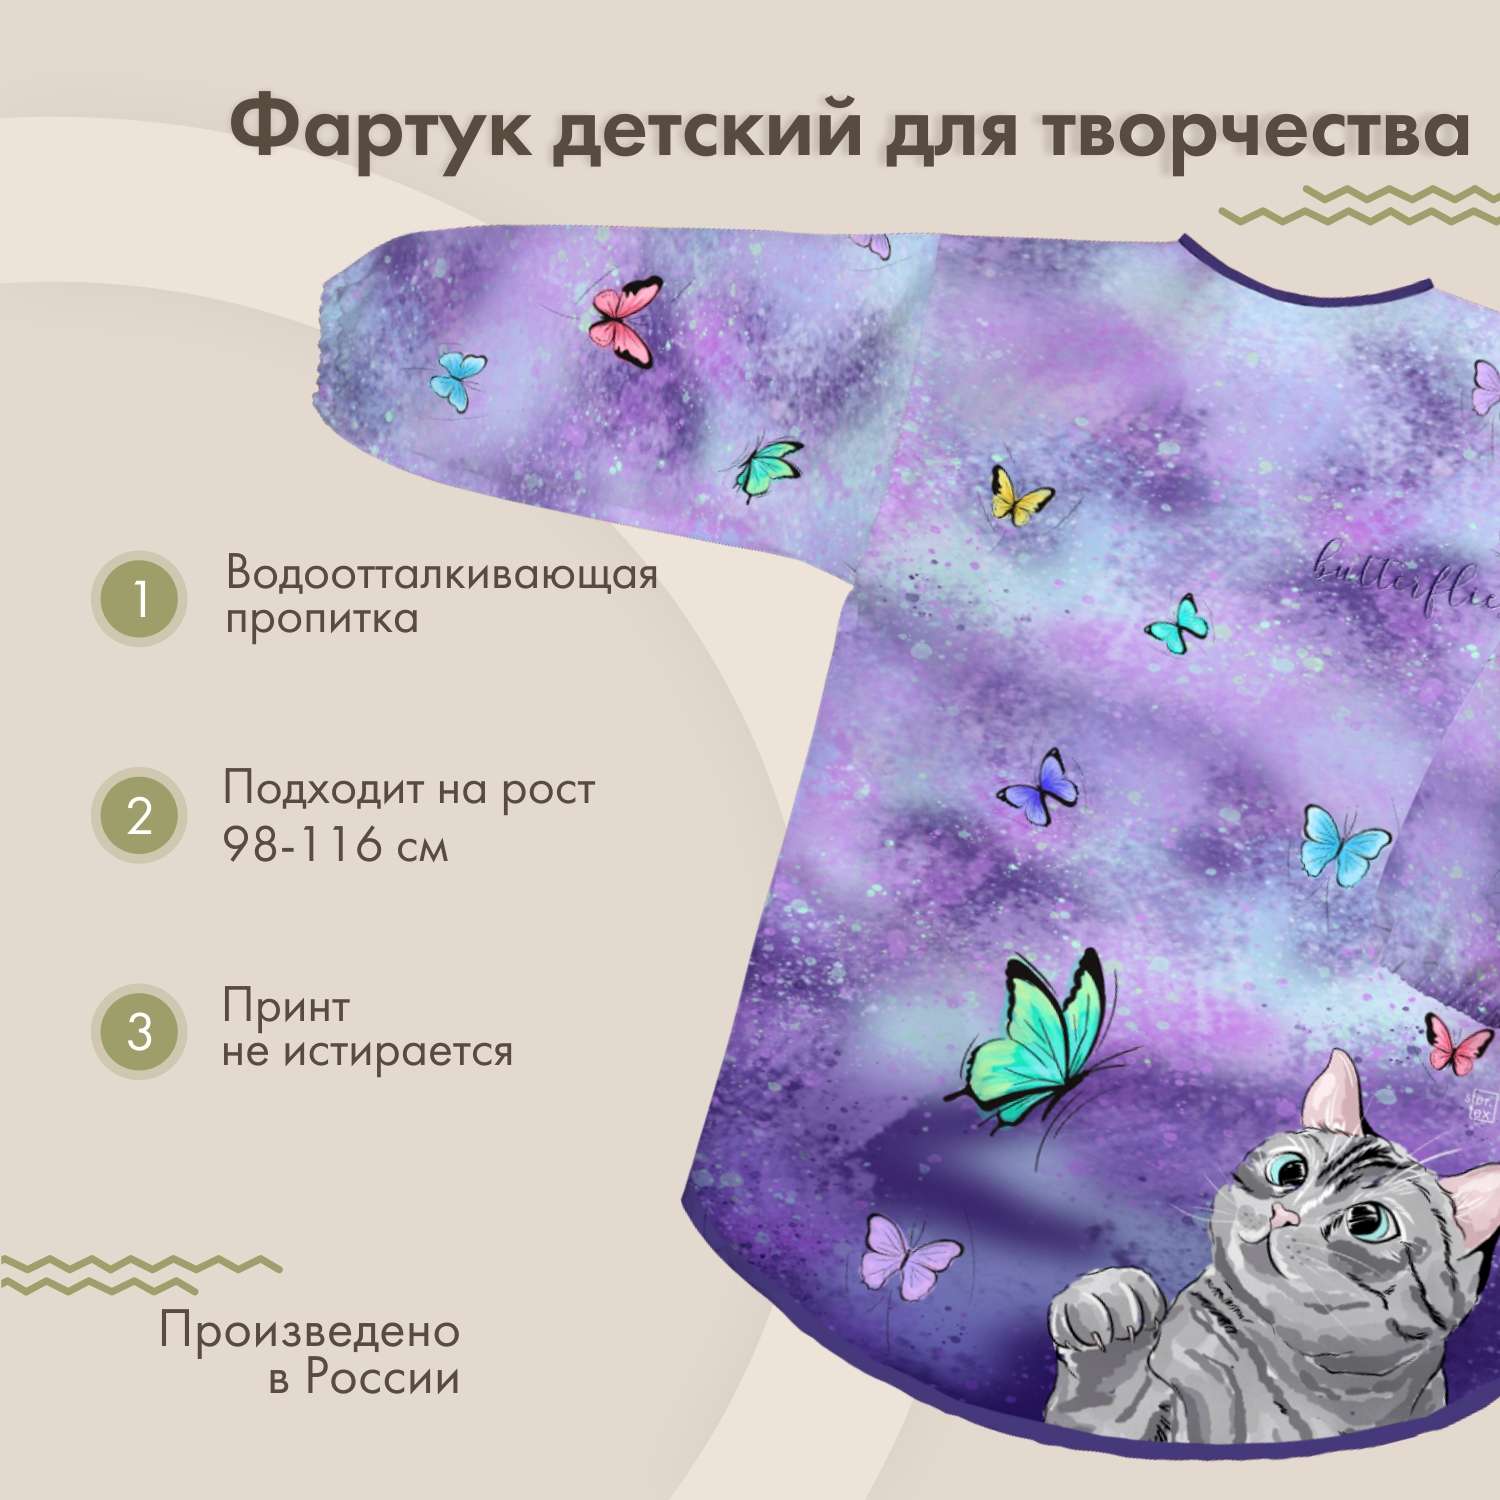 Фартук для творчества накидка sfer.tex Кошка с бабочками - фото 1